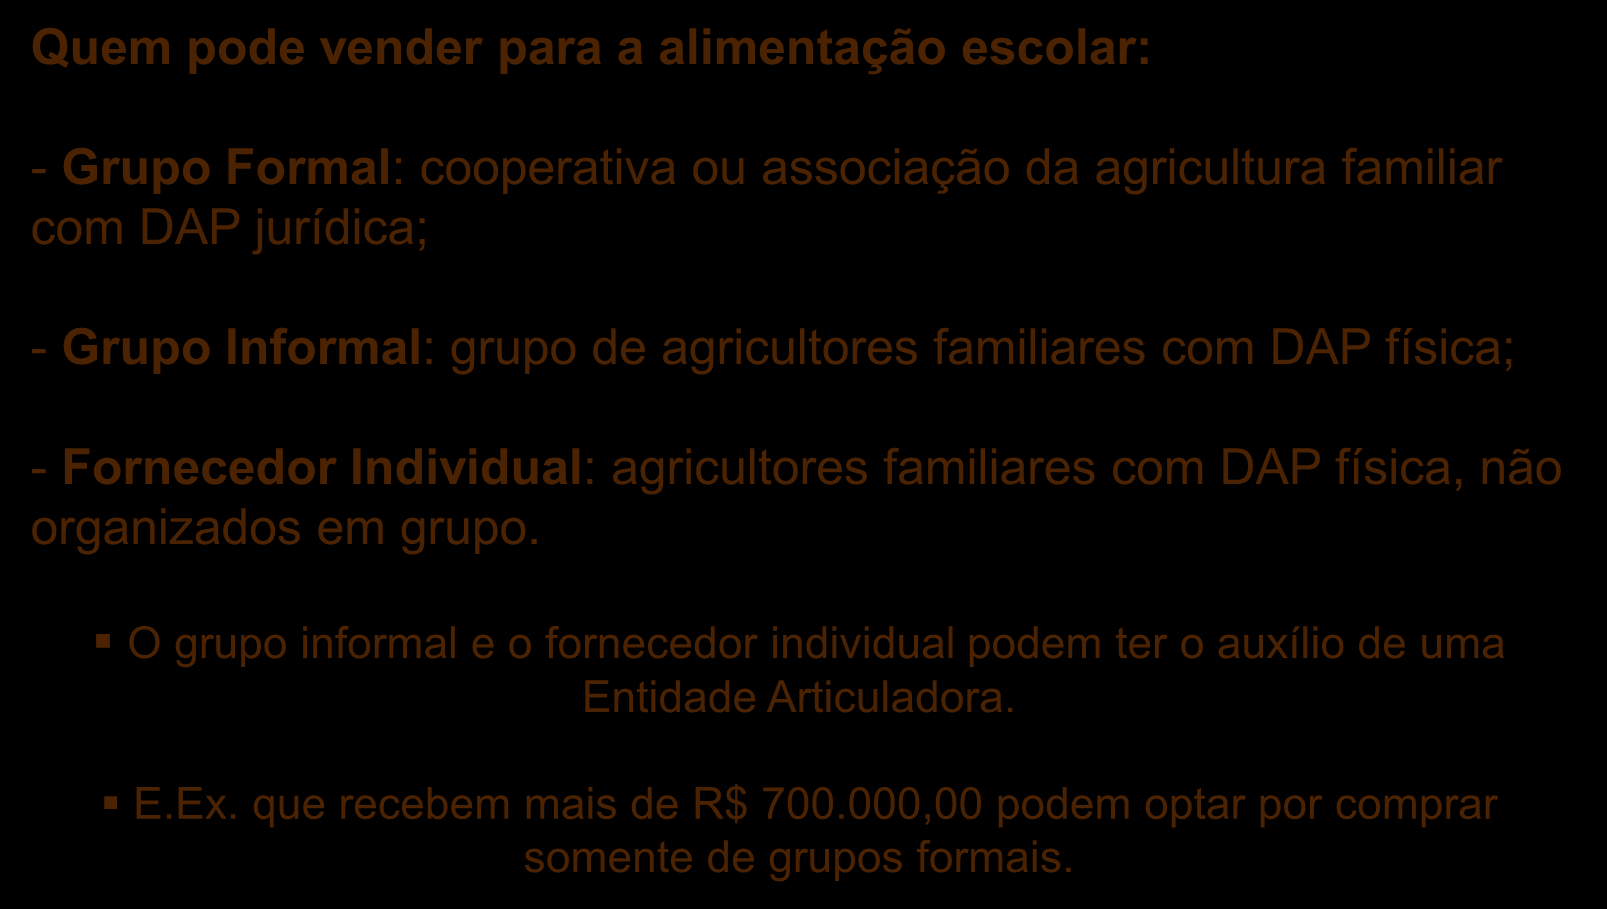 Resolução nº 26 de 17 de junho de 2013 Quem pode vender para a alimentação escolar: - Grupo Formal: cooperativa ou associação da agricultura familiar com DAP jurídica; - Grupo Informal: grupo de